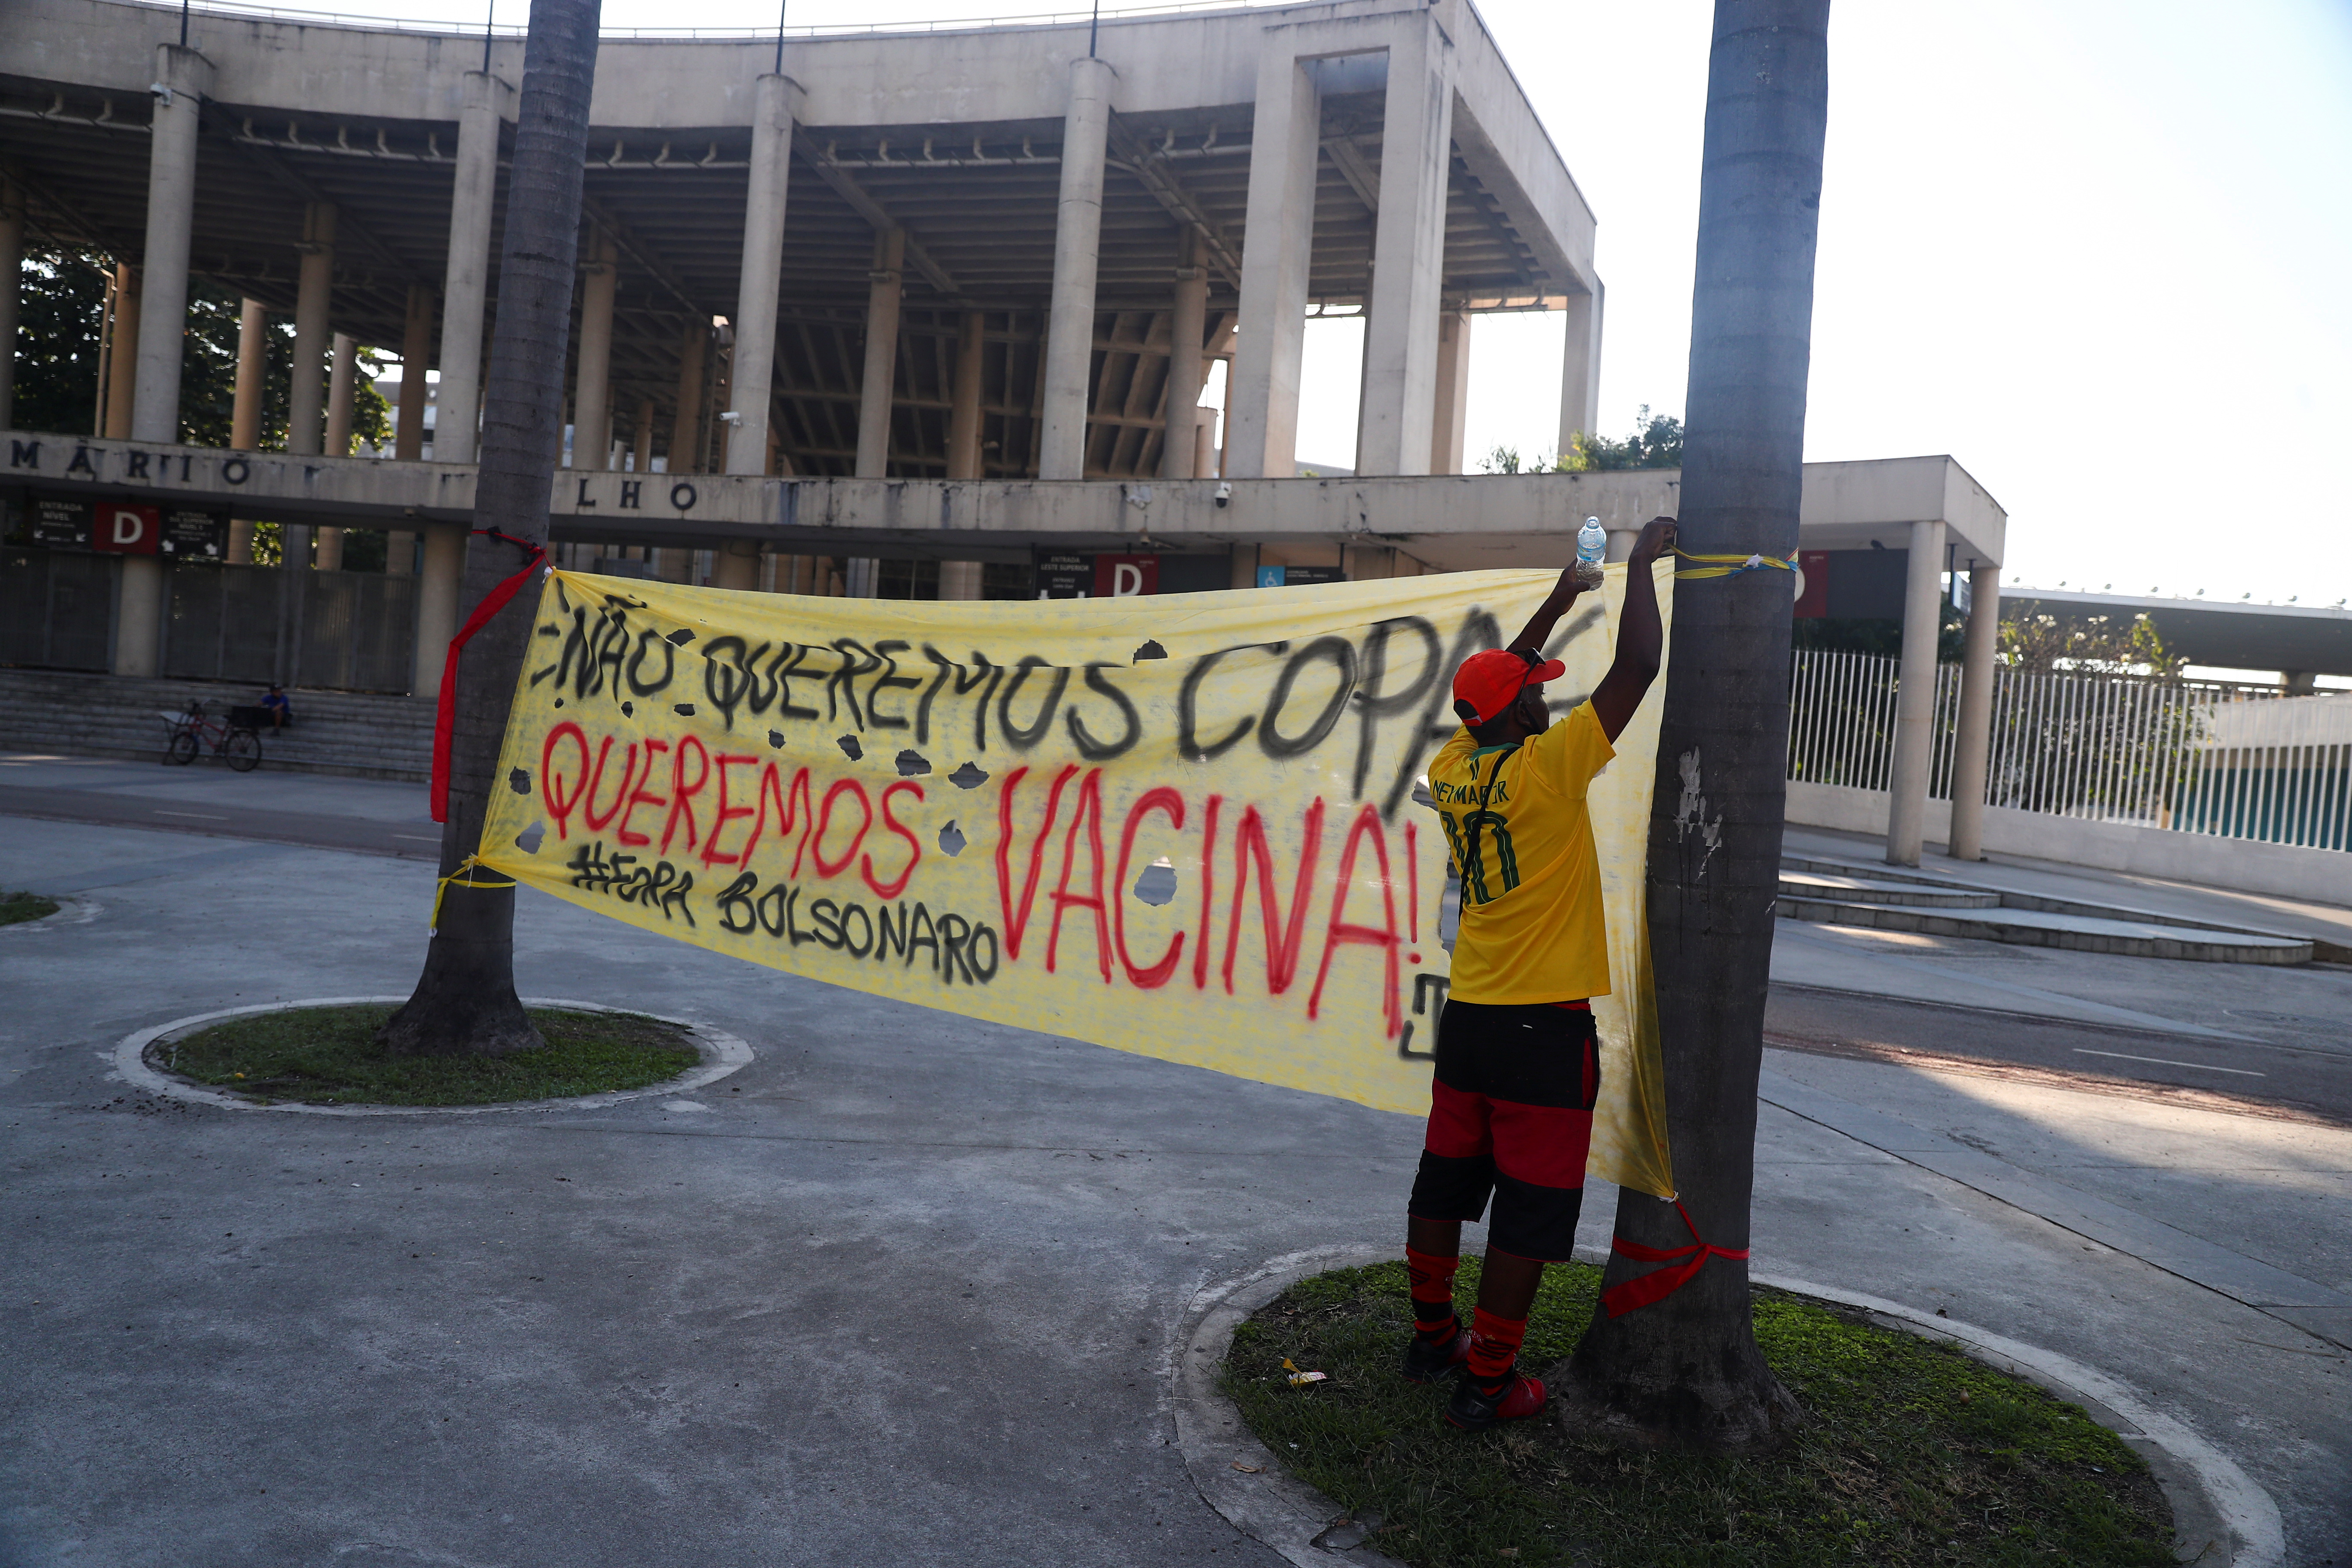 Banner outside the Maracana stadium in Rio de Janeiro